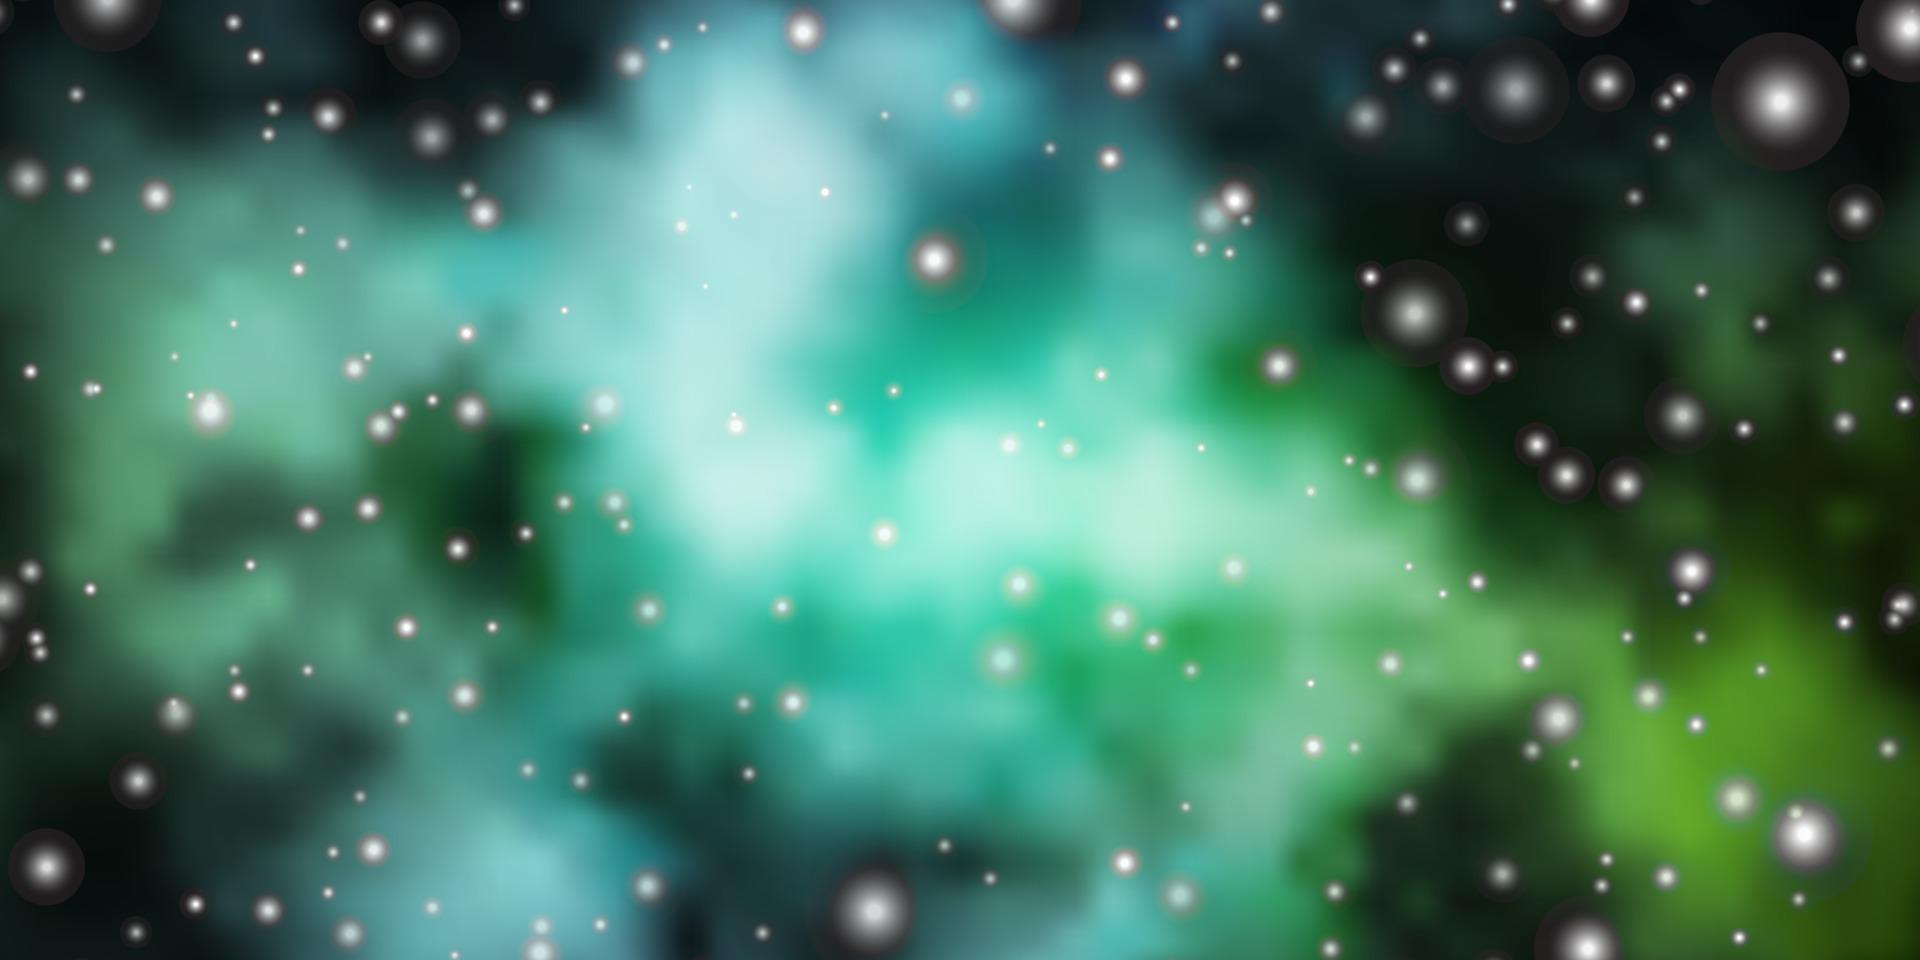 lichtblauwe, groene vectorachtergrond met kleine en grote sterren. vector